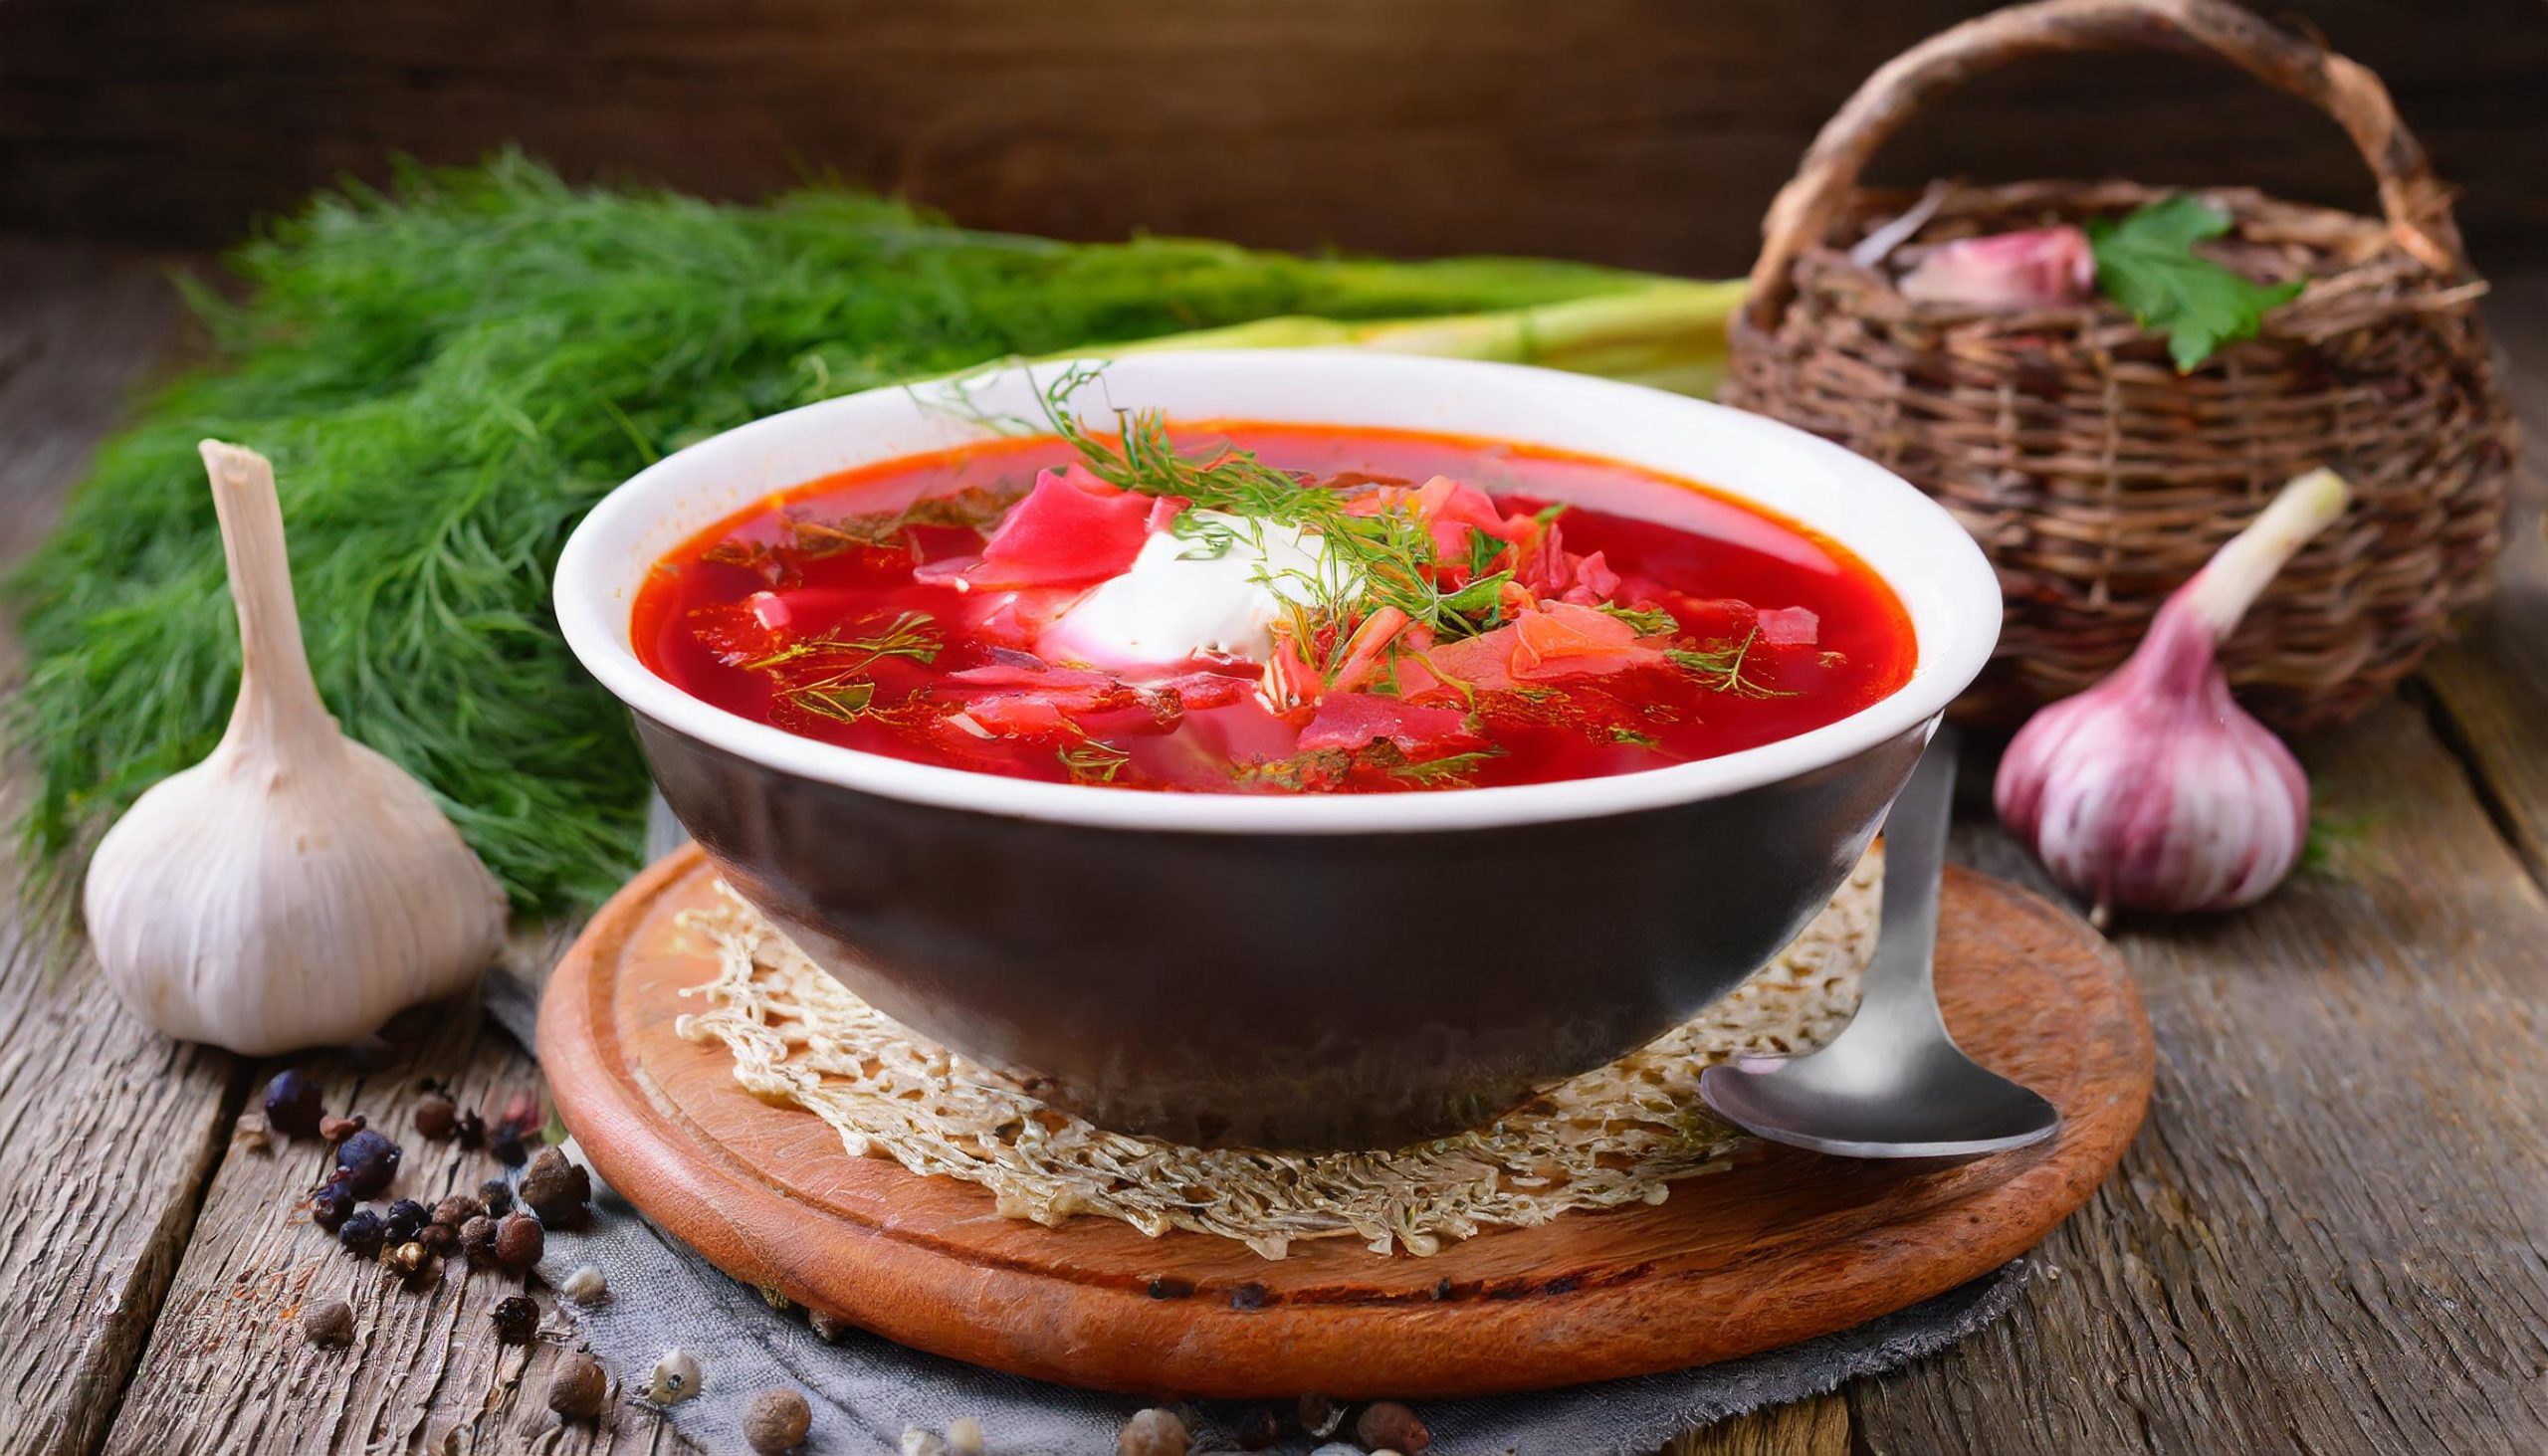 Ukrainian red borscht soup